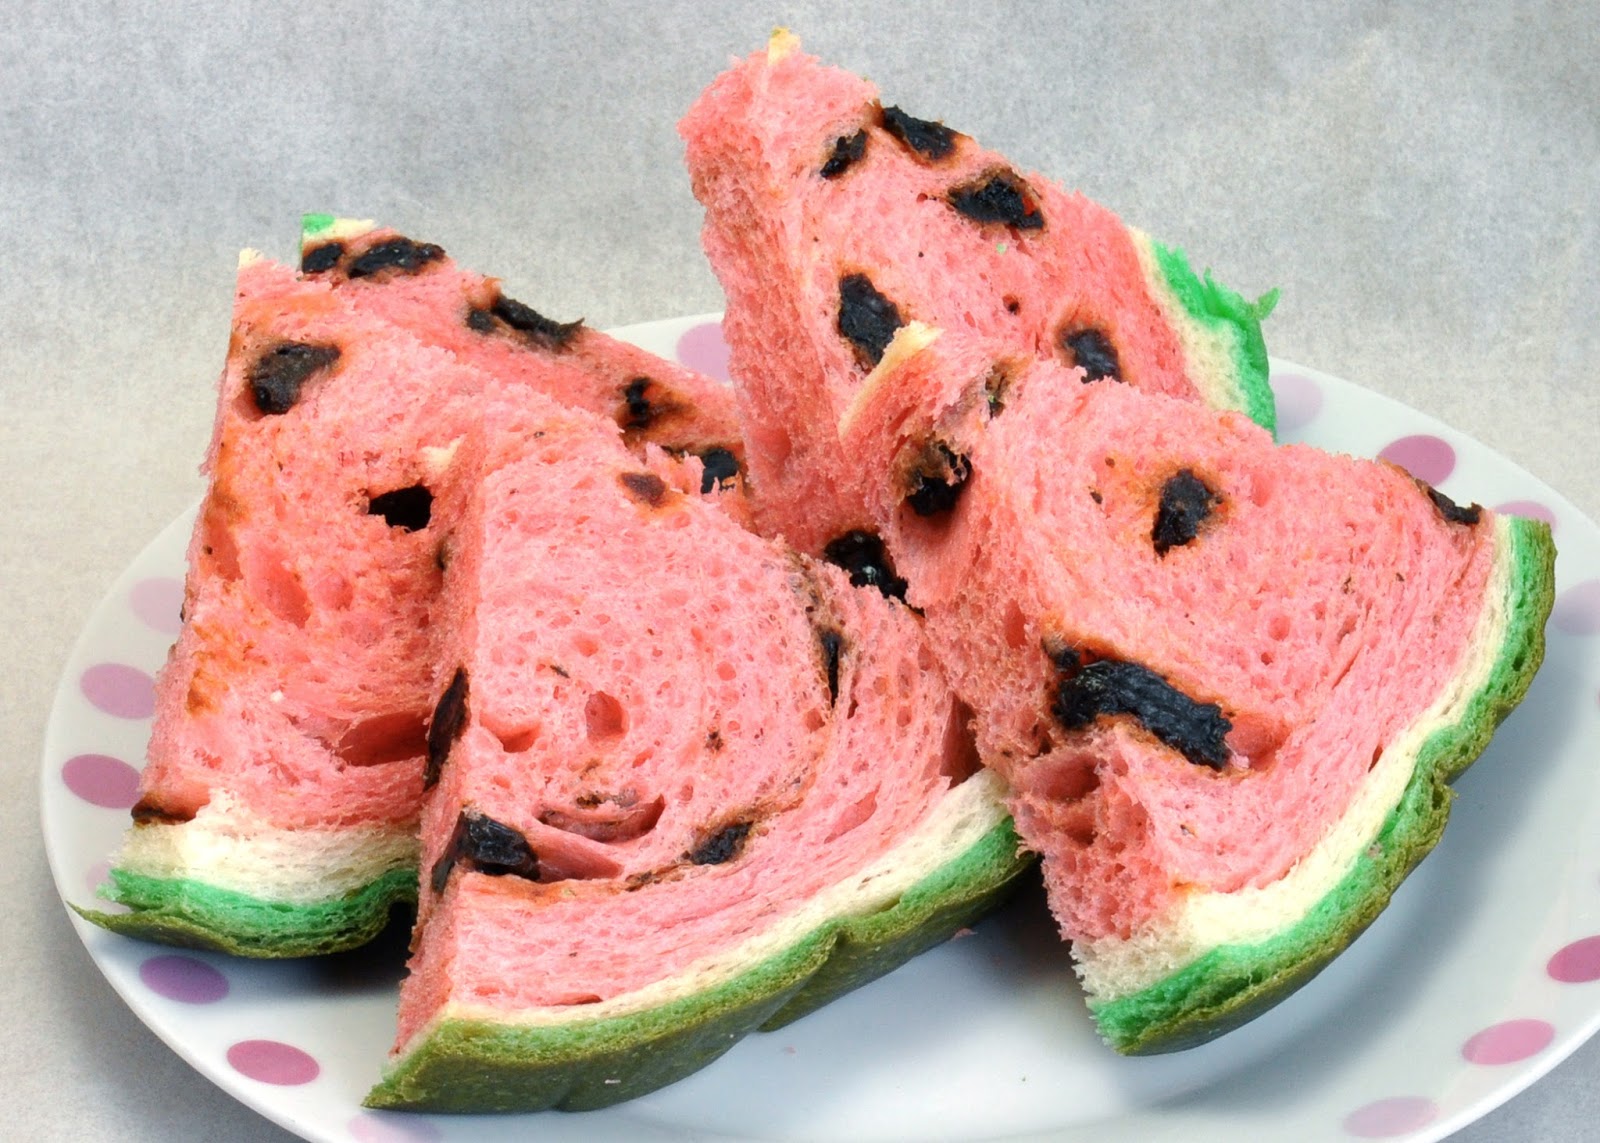 El pan de sandía taiwanés deleitará sus sentidos y confundirá sus papilas gustativas 6